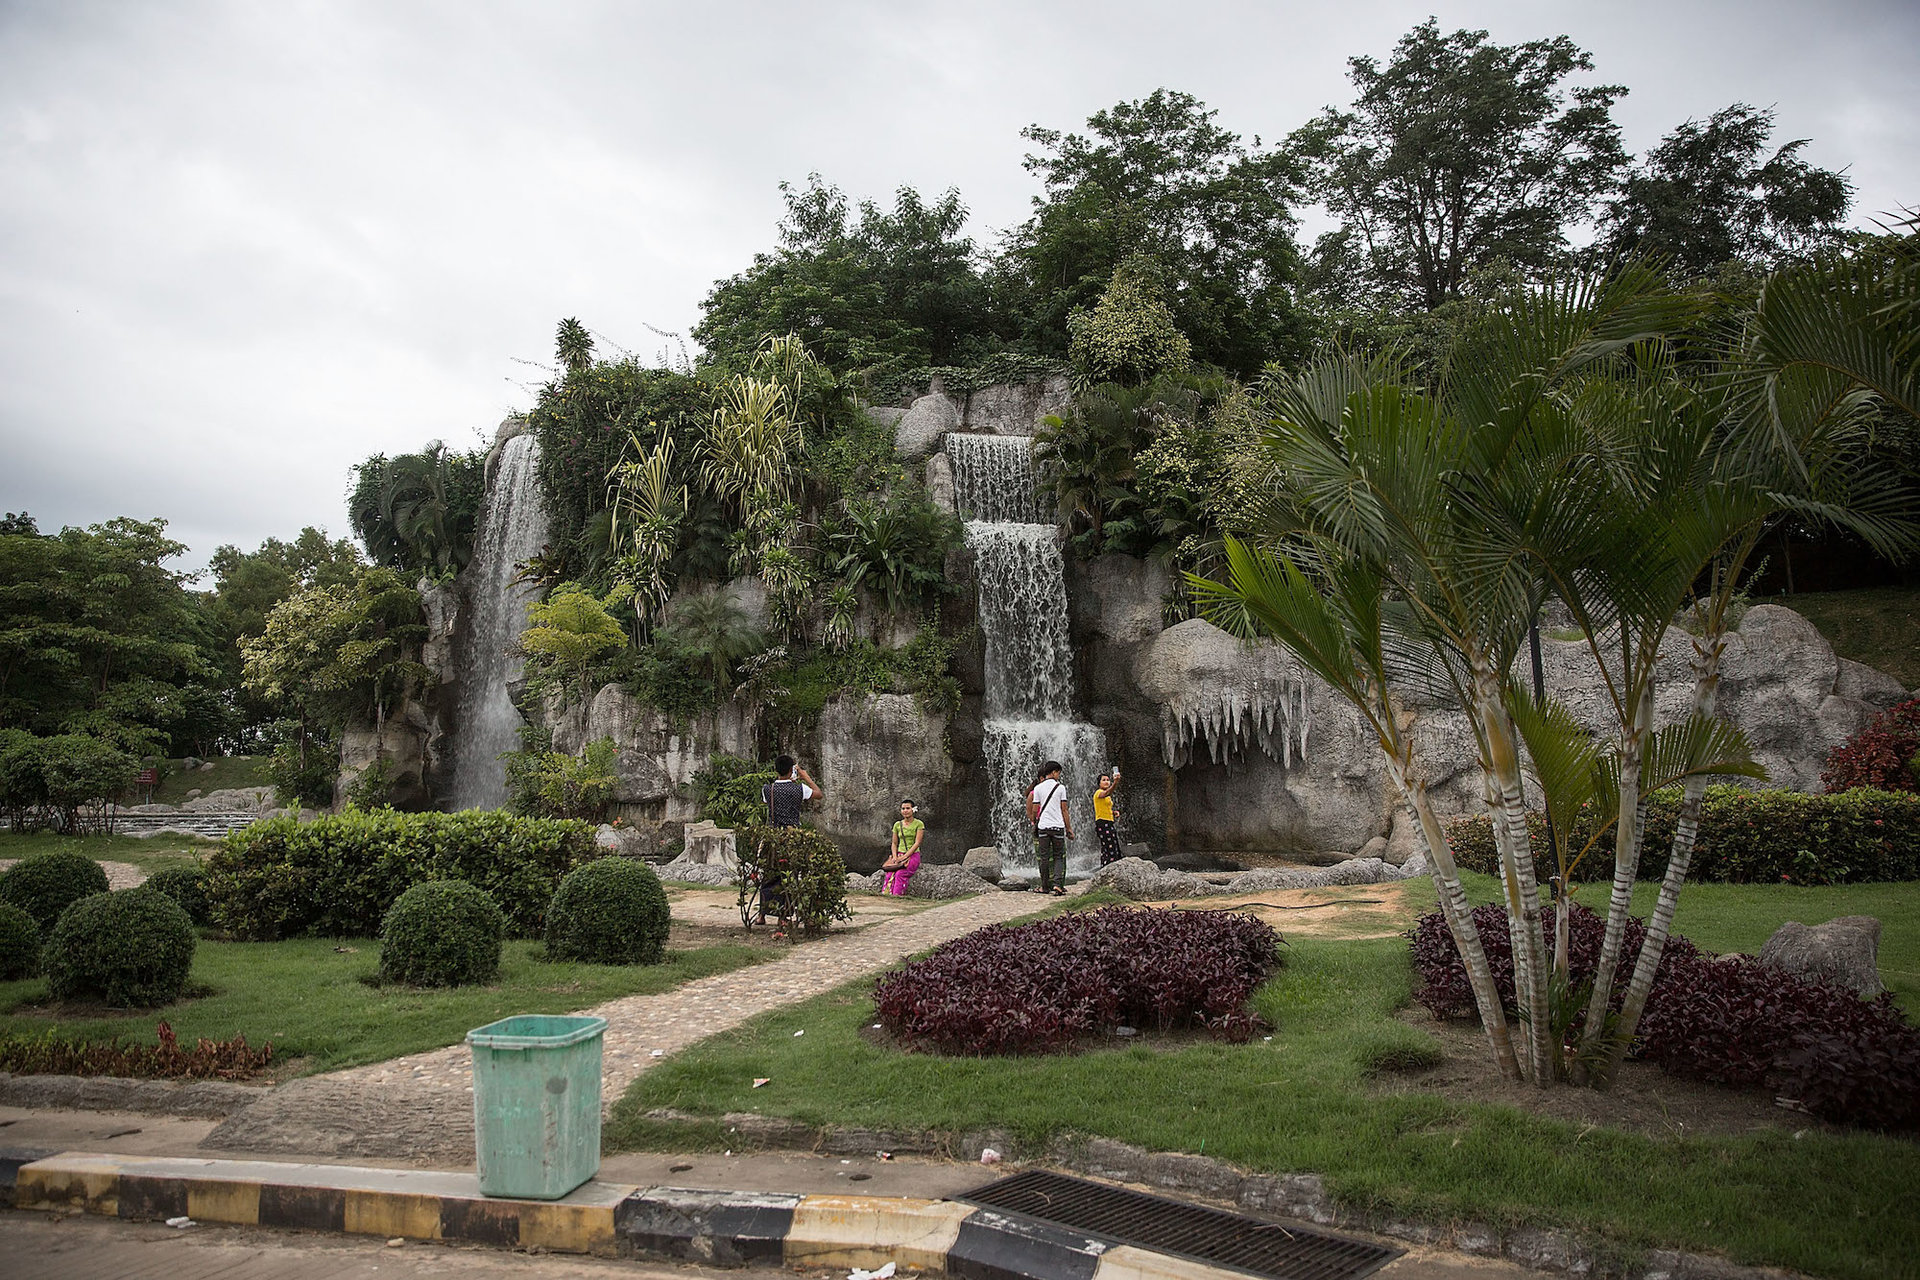 این چند نفری که در تصویر می بینید، اوج شلوغی این منطقه گردشگری محسوب می شوند که در مقابل آبشار مصنوعی واقع در پارک آبشار Naypyidaw در حال عکس گرفتن هستند.